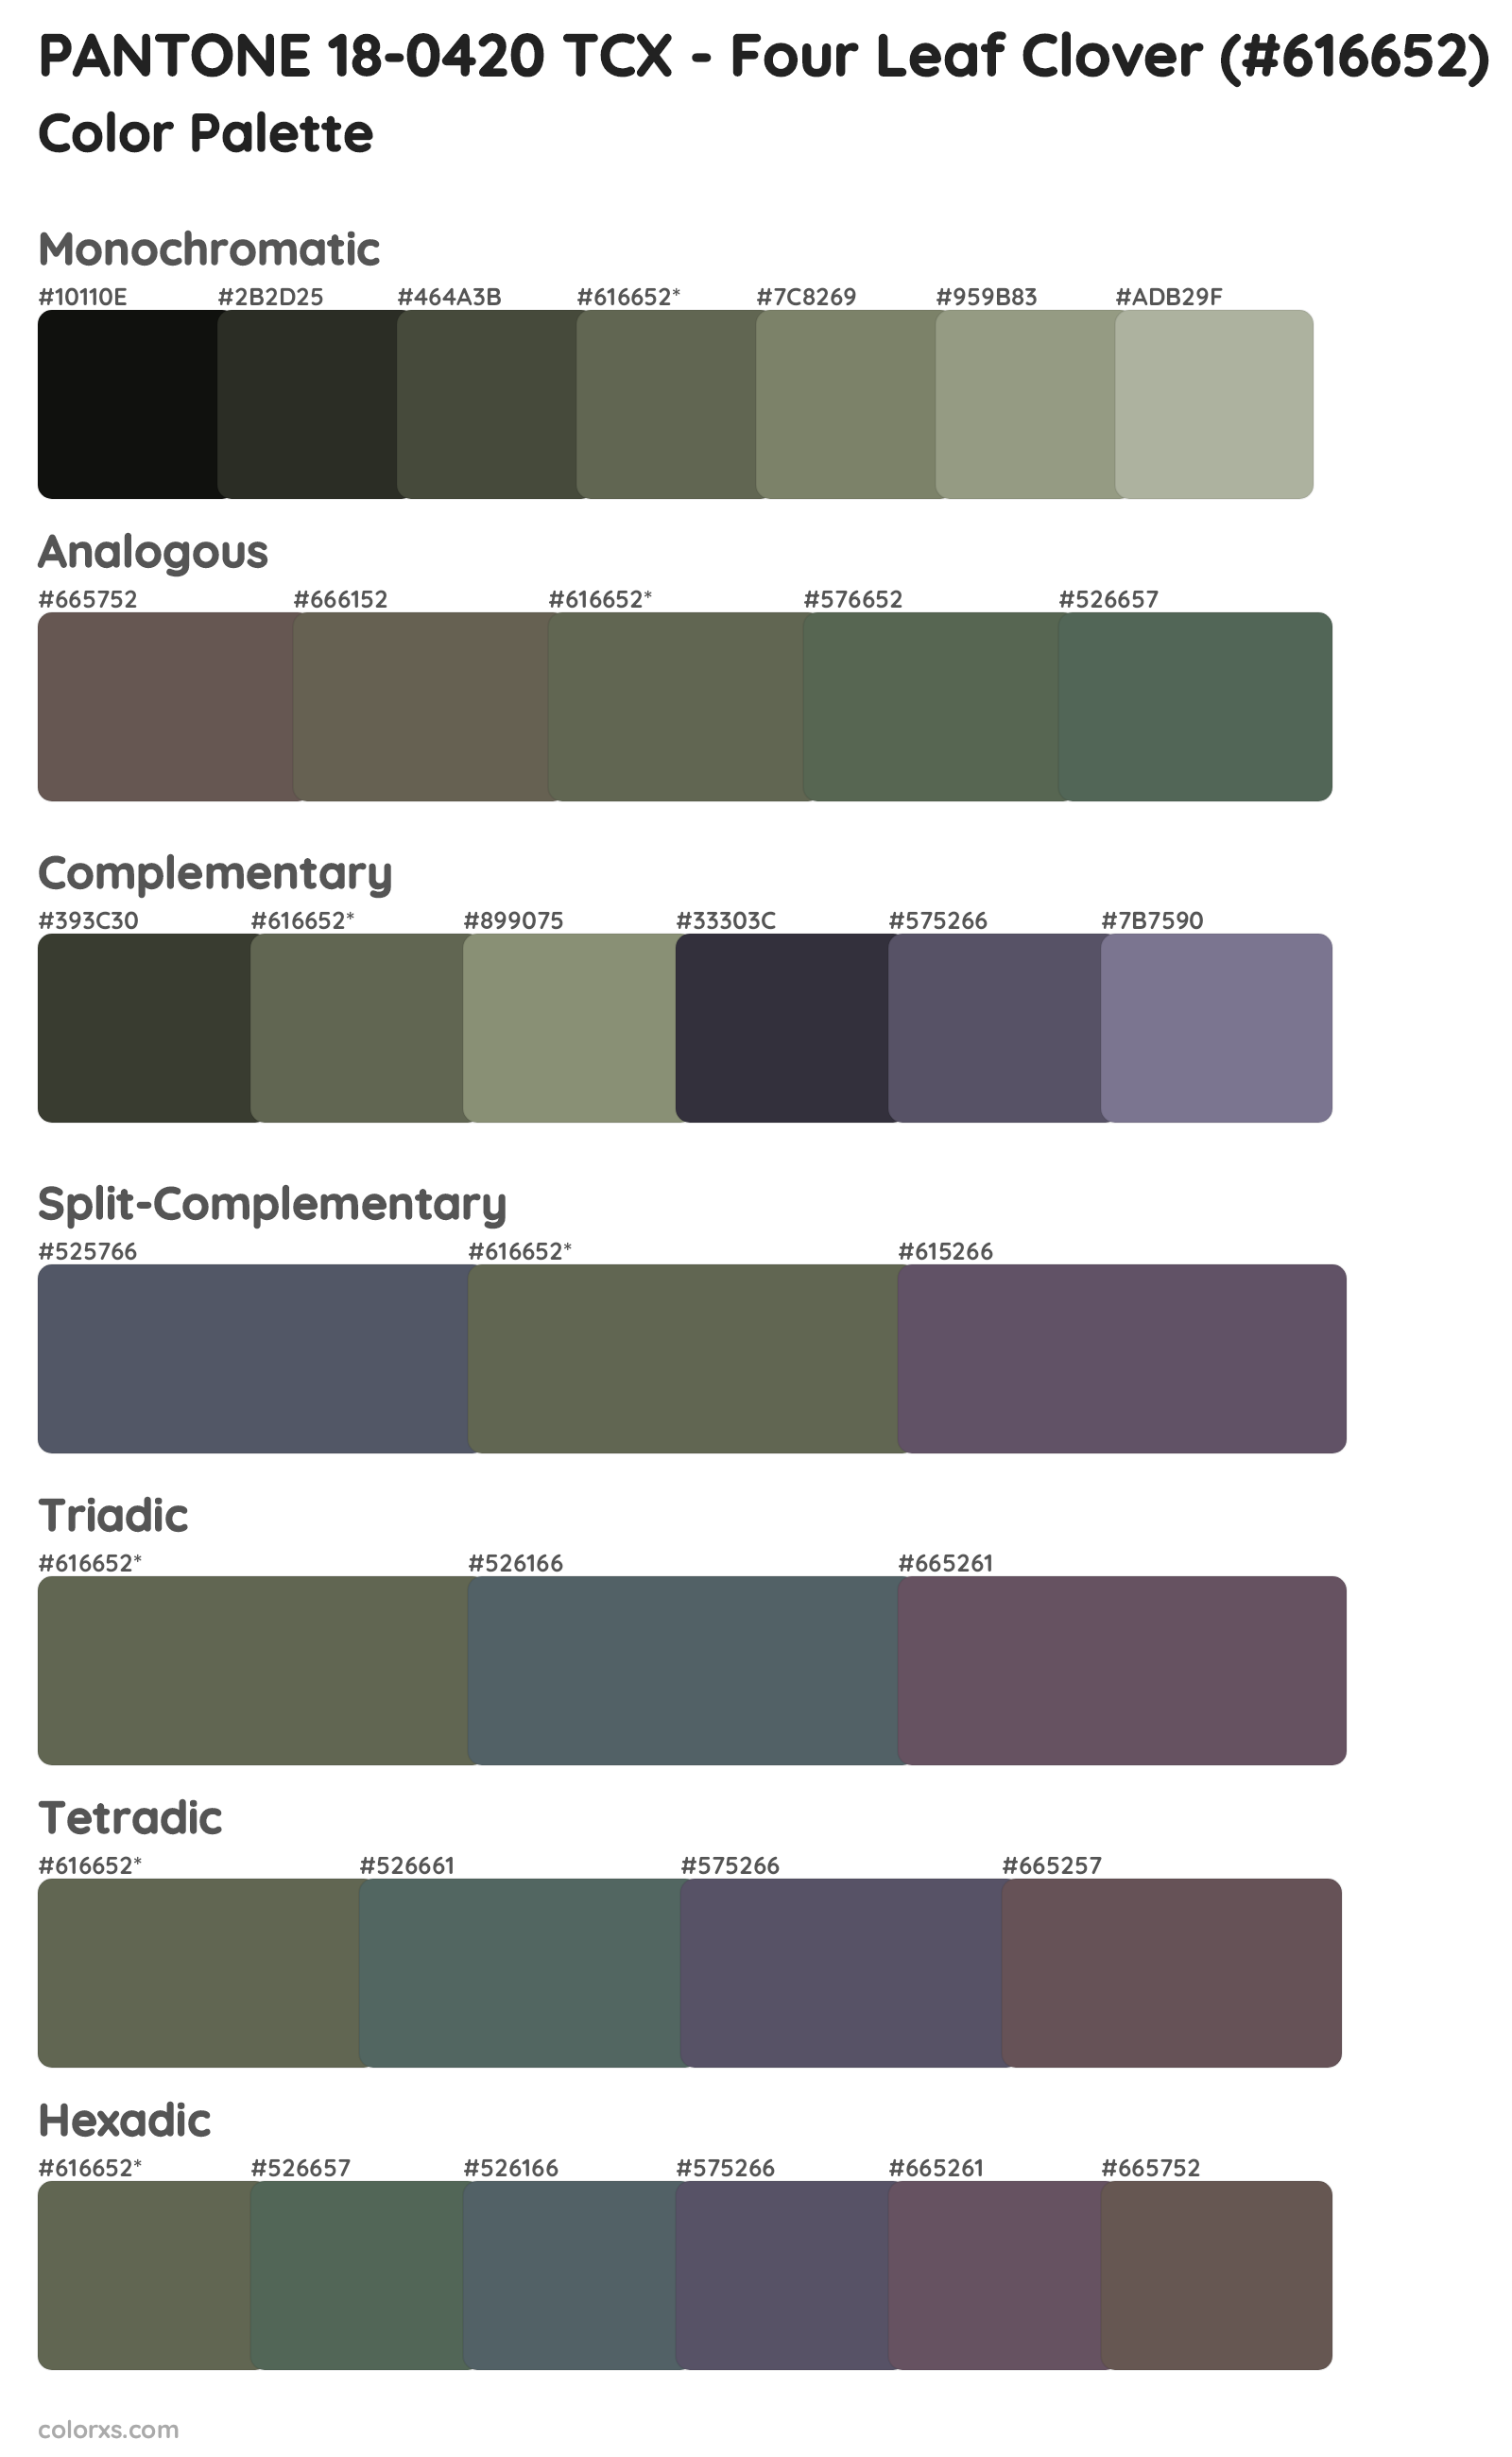 PANTONE 18-0420 TCX - Four Leaf Clover Color Scheme Palettes